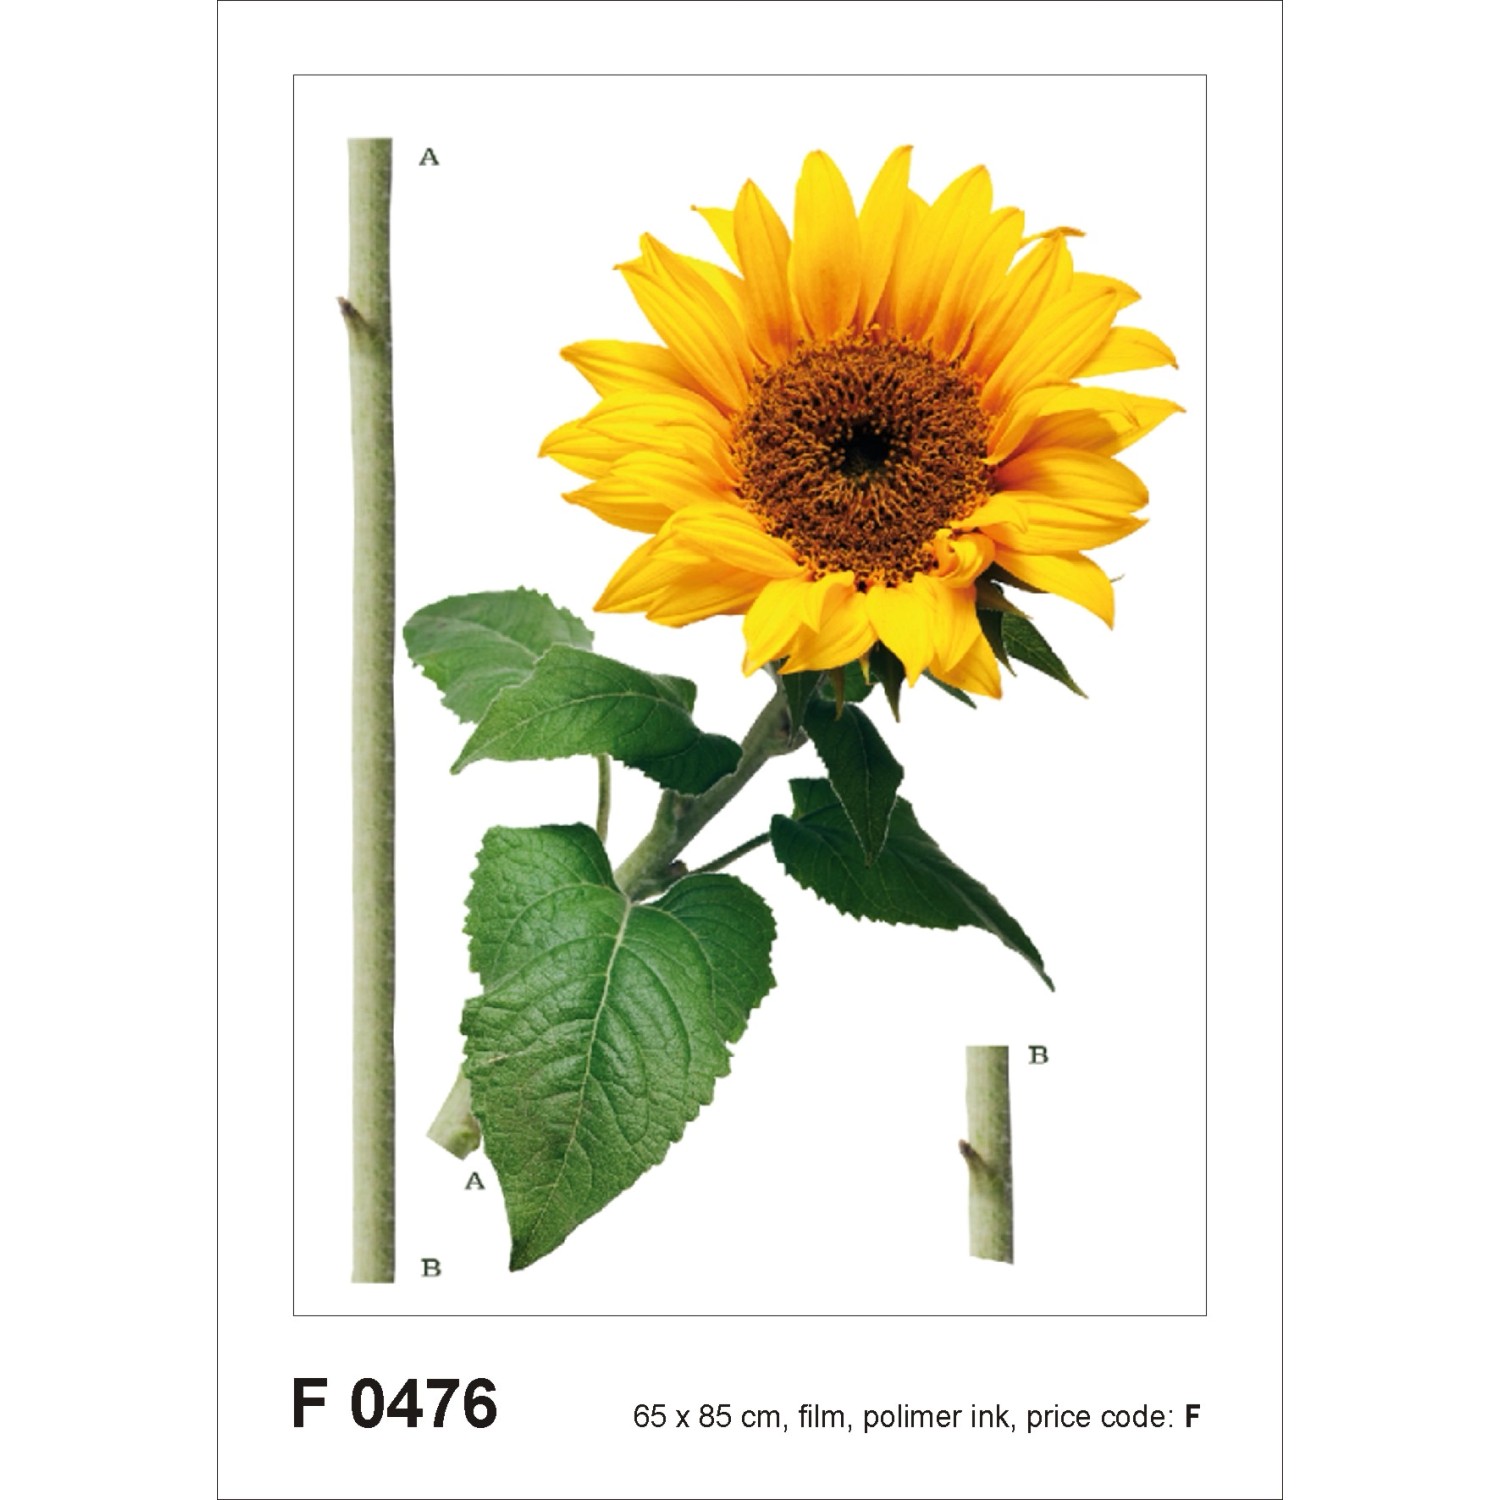 Sanders & Sanders Wandtattoo Sonnenblume Gelb und Grün 65 x 85 cm 600262 günstig online kaufen